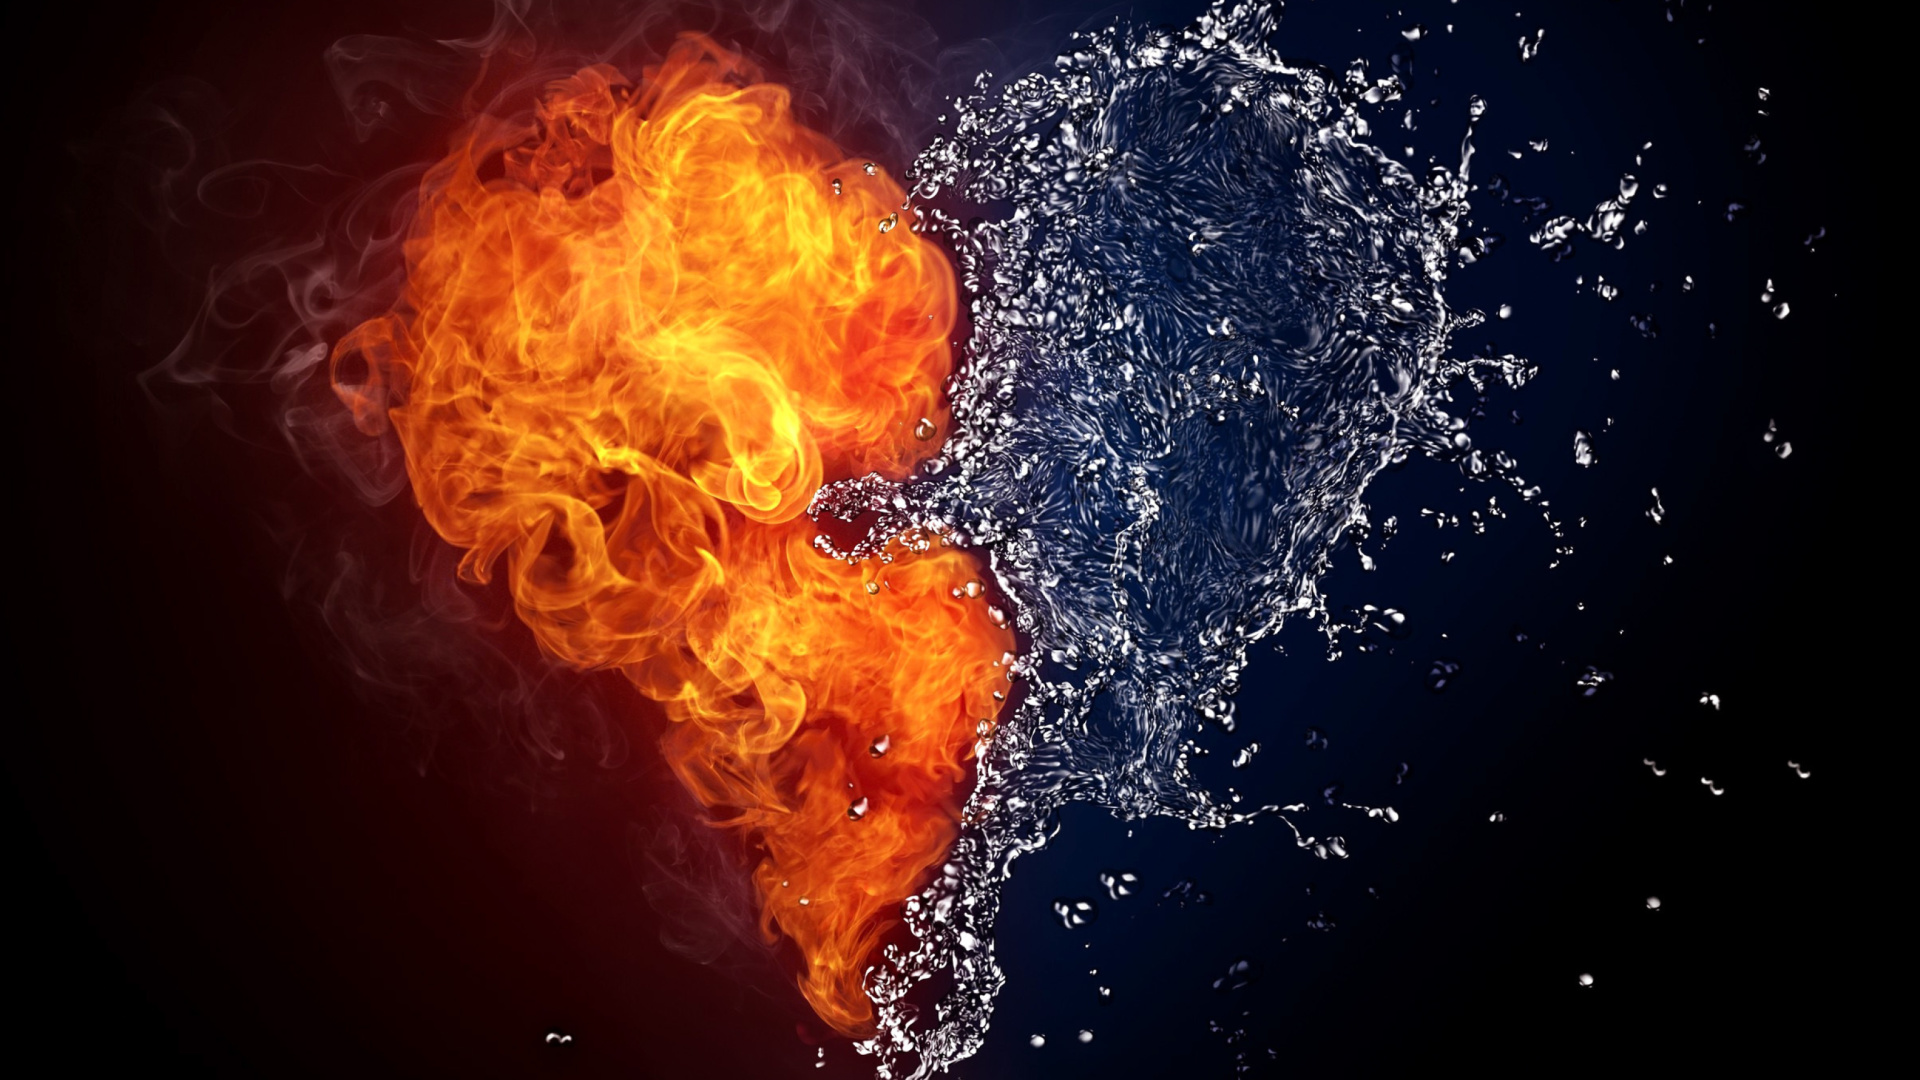 Das Water and Fire Heart Wallpaper 1920x1080